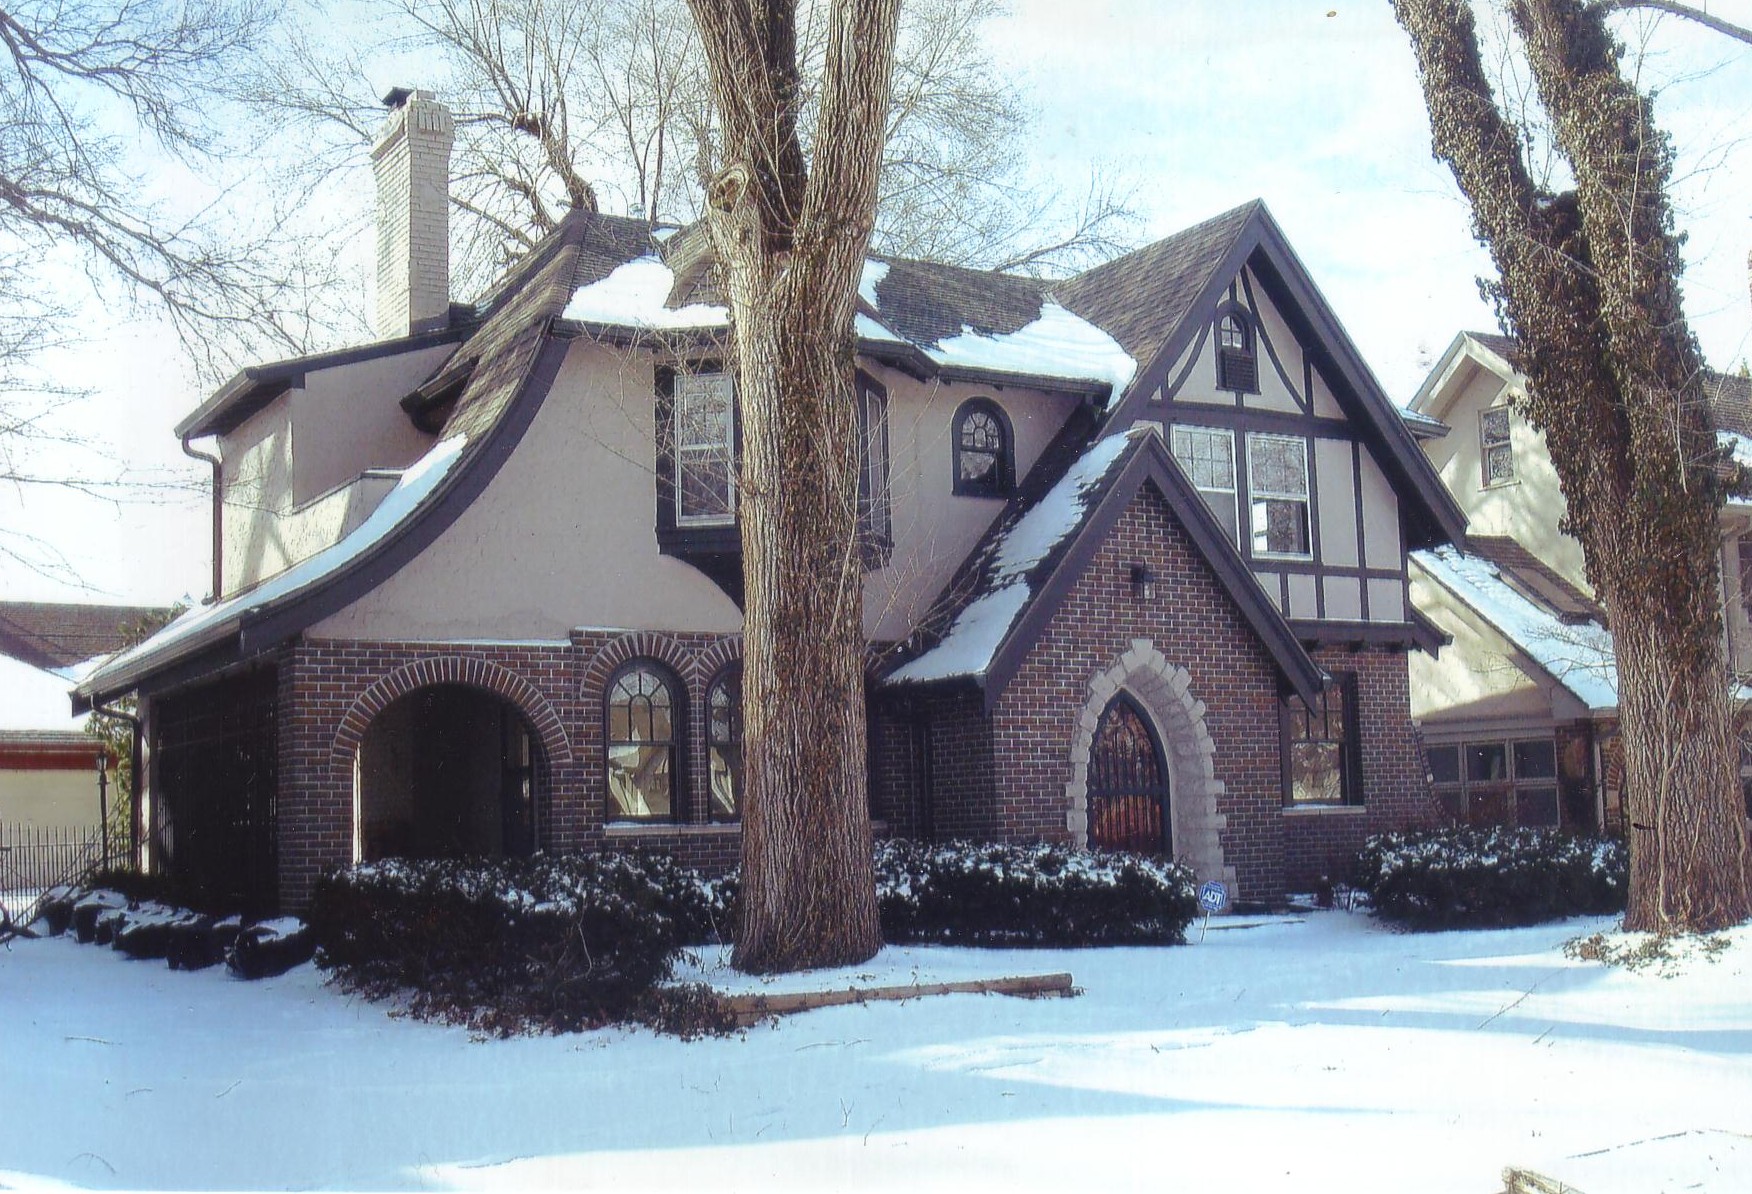 Jarboe house in snow